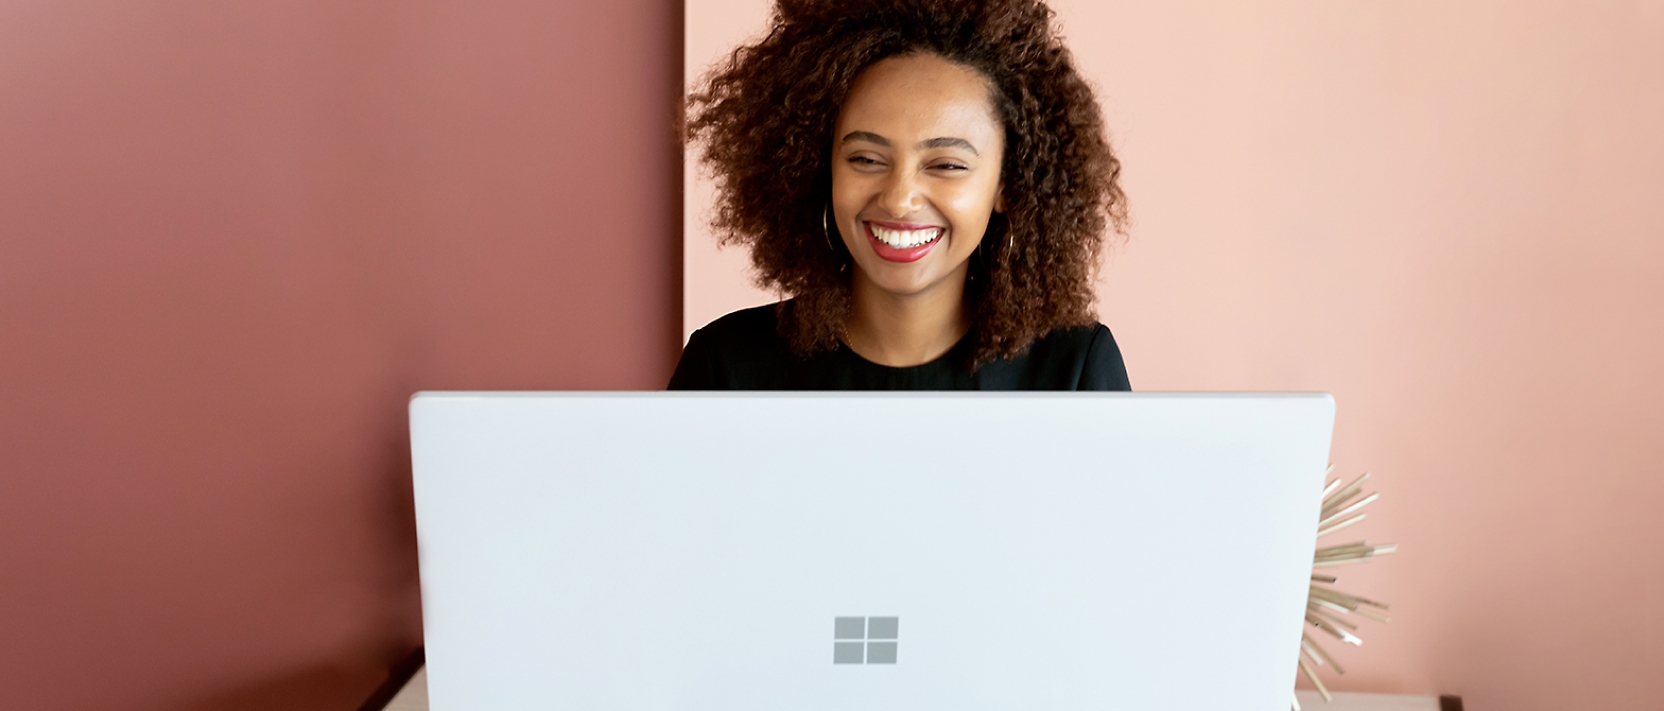 Een vrouw glimlacht terwijl ze op een laptop werkt.